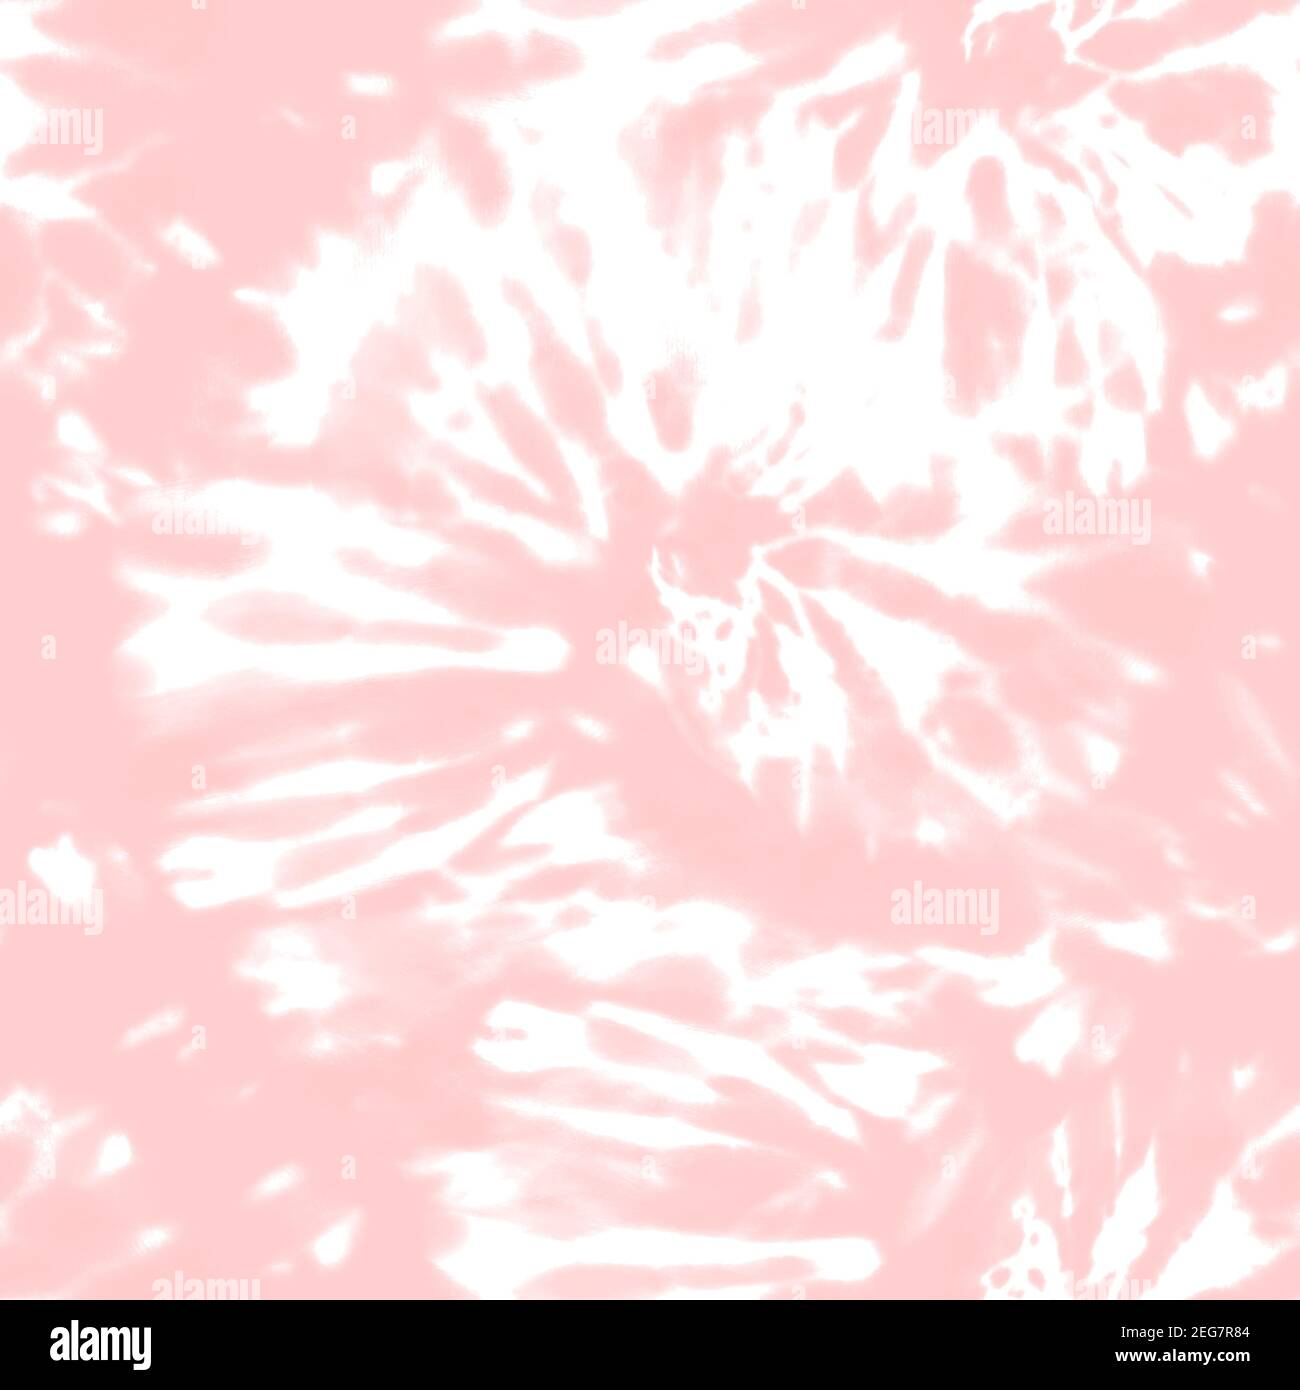 Hoa văn Shibori nhuộm màu hồng xuyên suốt ấn tượng đến mức bạn sẽ muốn xem nó liên tục. Hãy khám phá những mảng màu tuyệt đẹp và sự tinh tế ngay bây giờ!